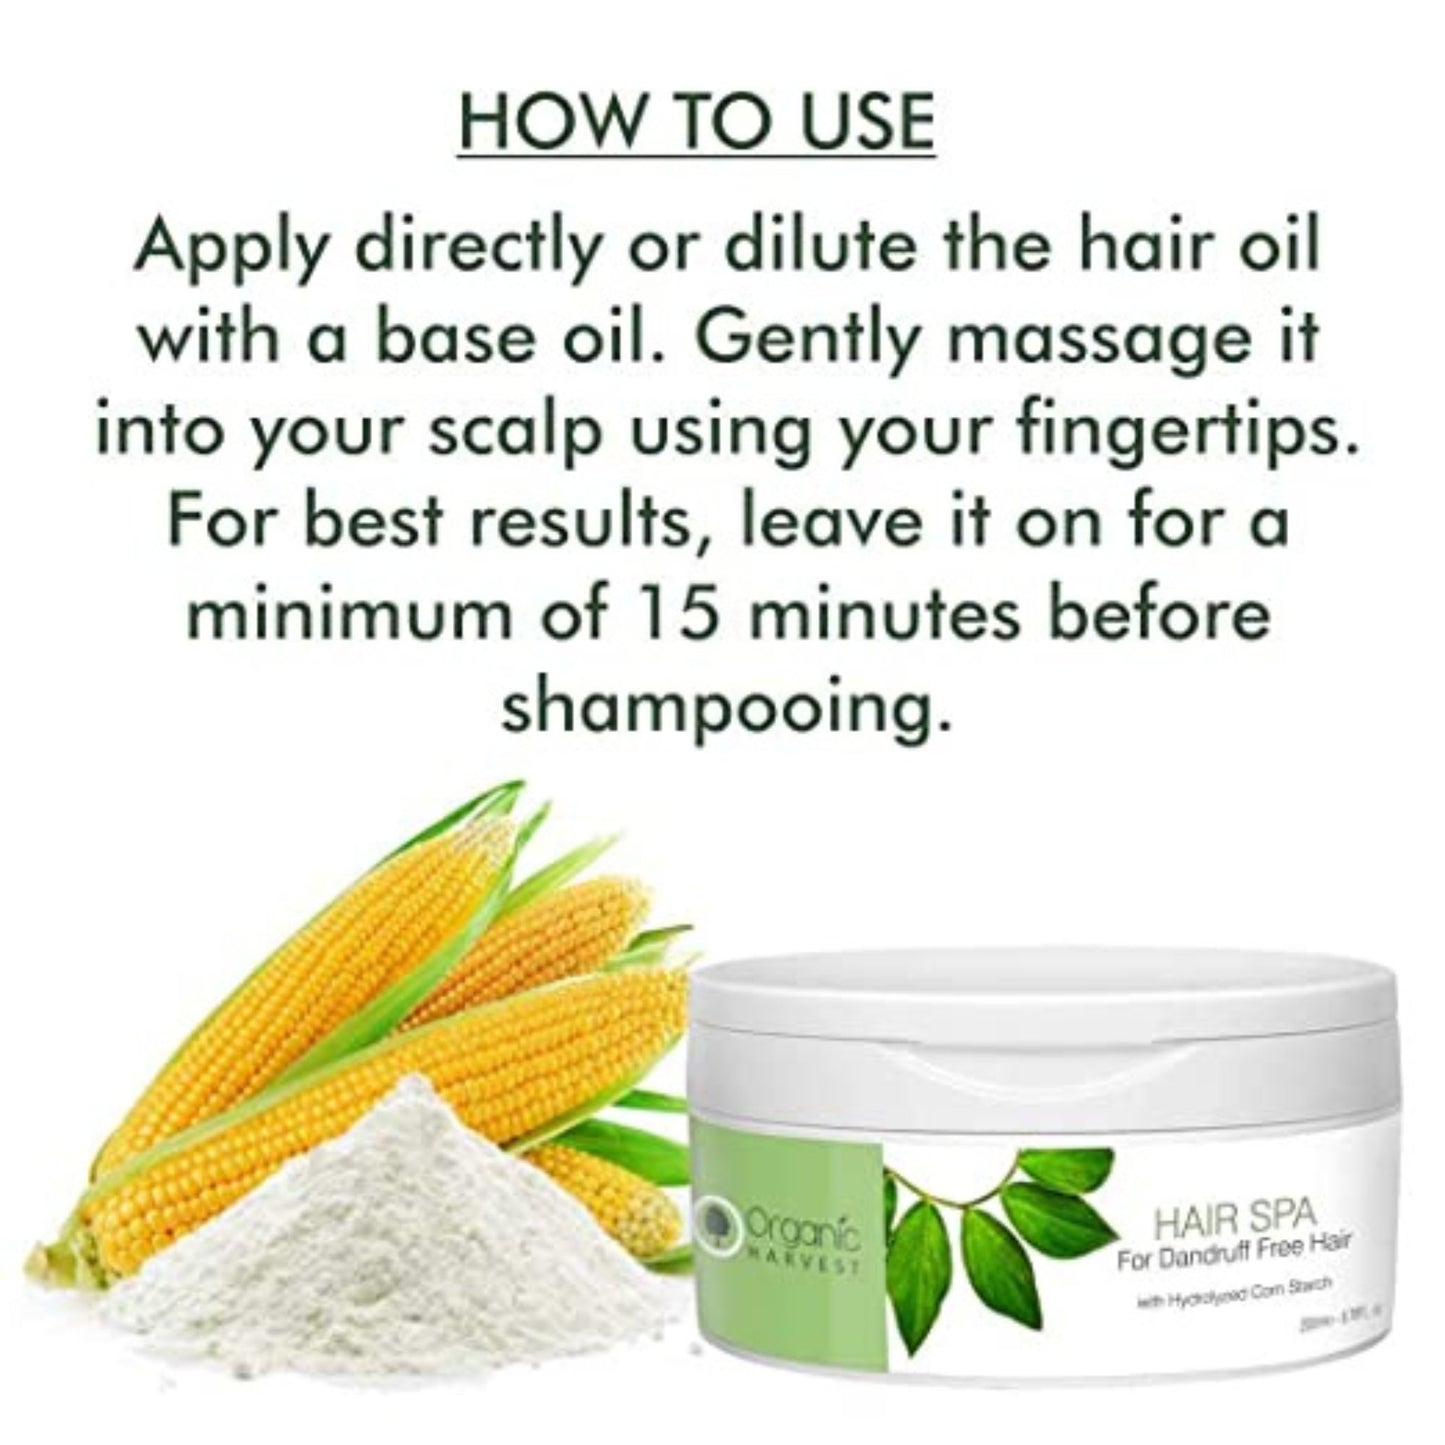 Organic Harvest Hair Spa for Dandruff Free Hair, Moisturising the Hair, ECOCERT & PeTA Certified, Paraben & Sulphate Free - 200ml